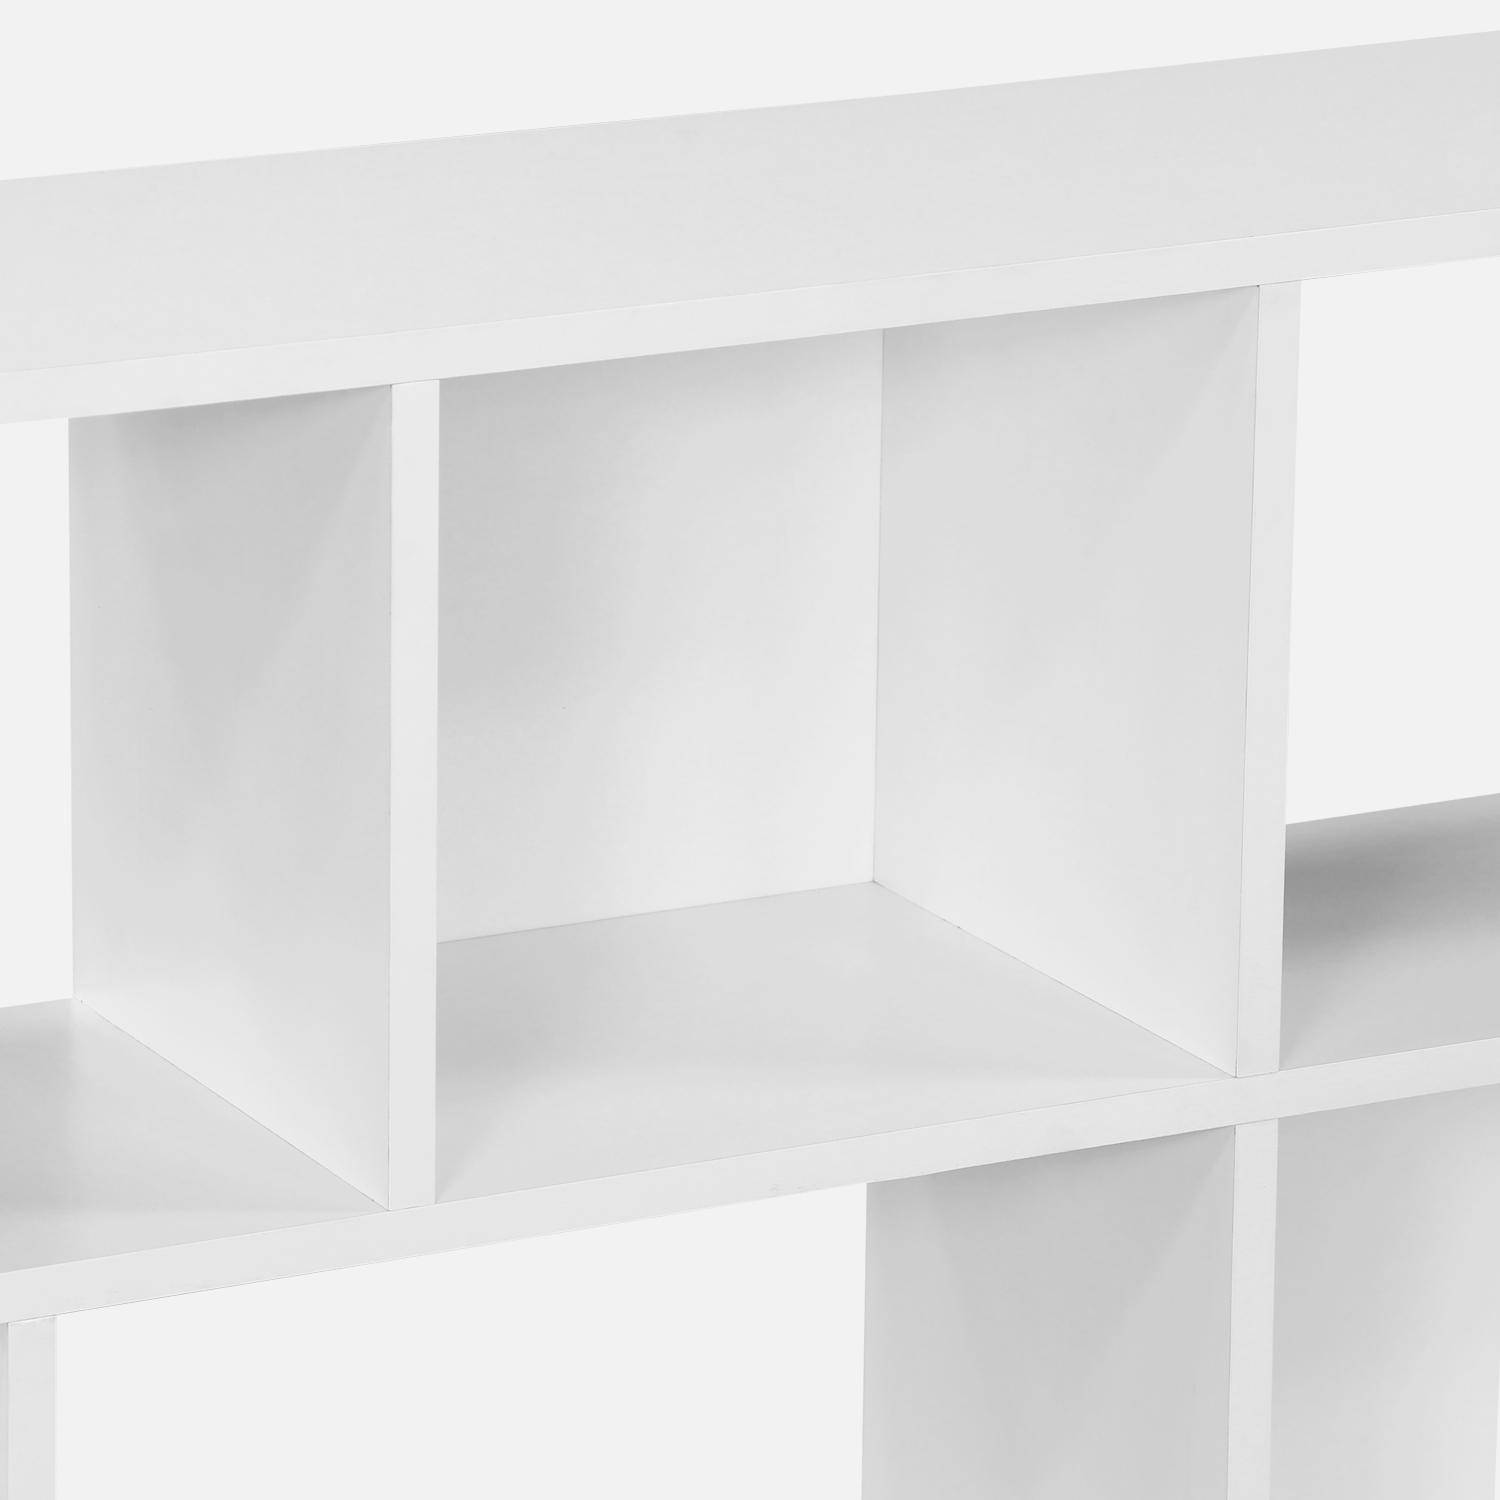 Bibliothèque design asymétrique blanche, Pieter, 3 étagères, 12 compartiments de rangement Photo3